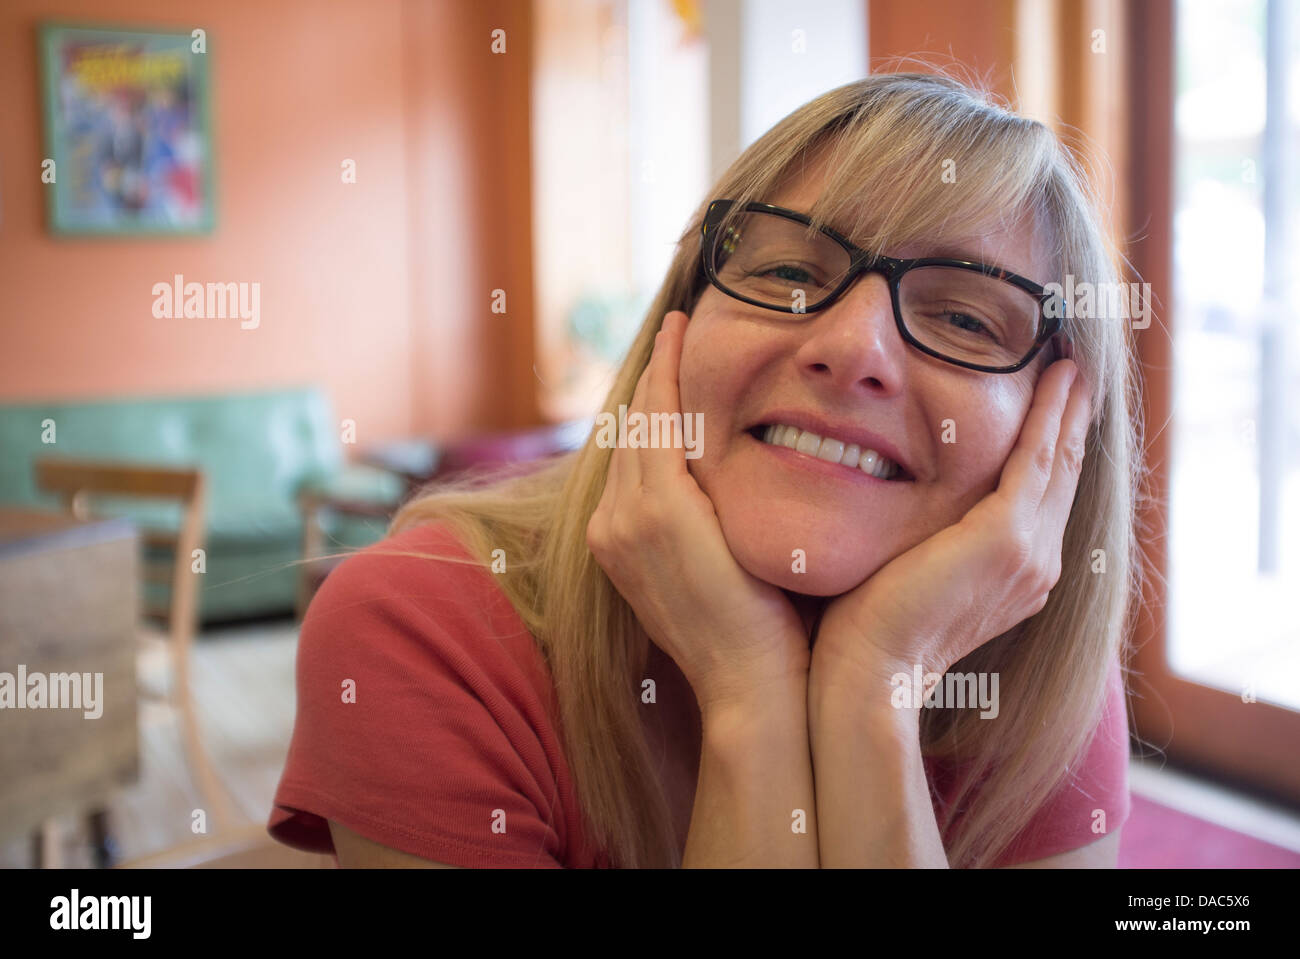 Primo piano della donna con sorridente, espressione piacevole guardando la fotocamera. Foto Stock